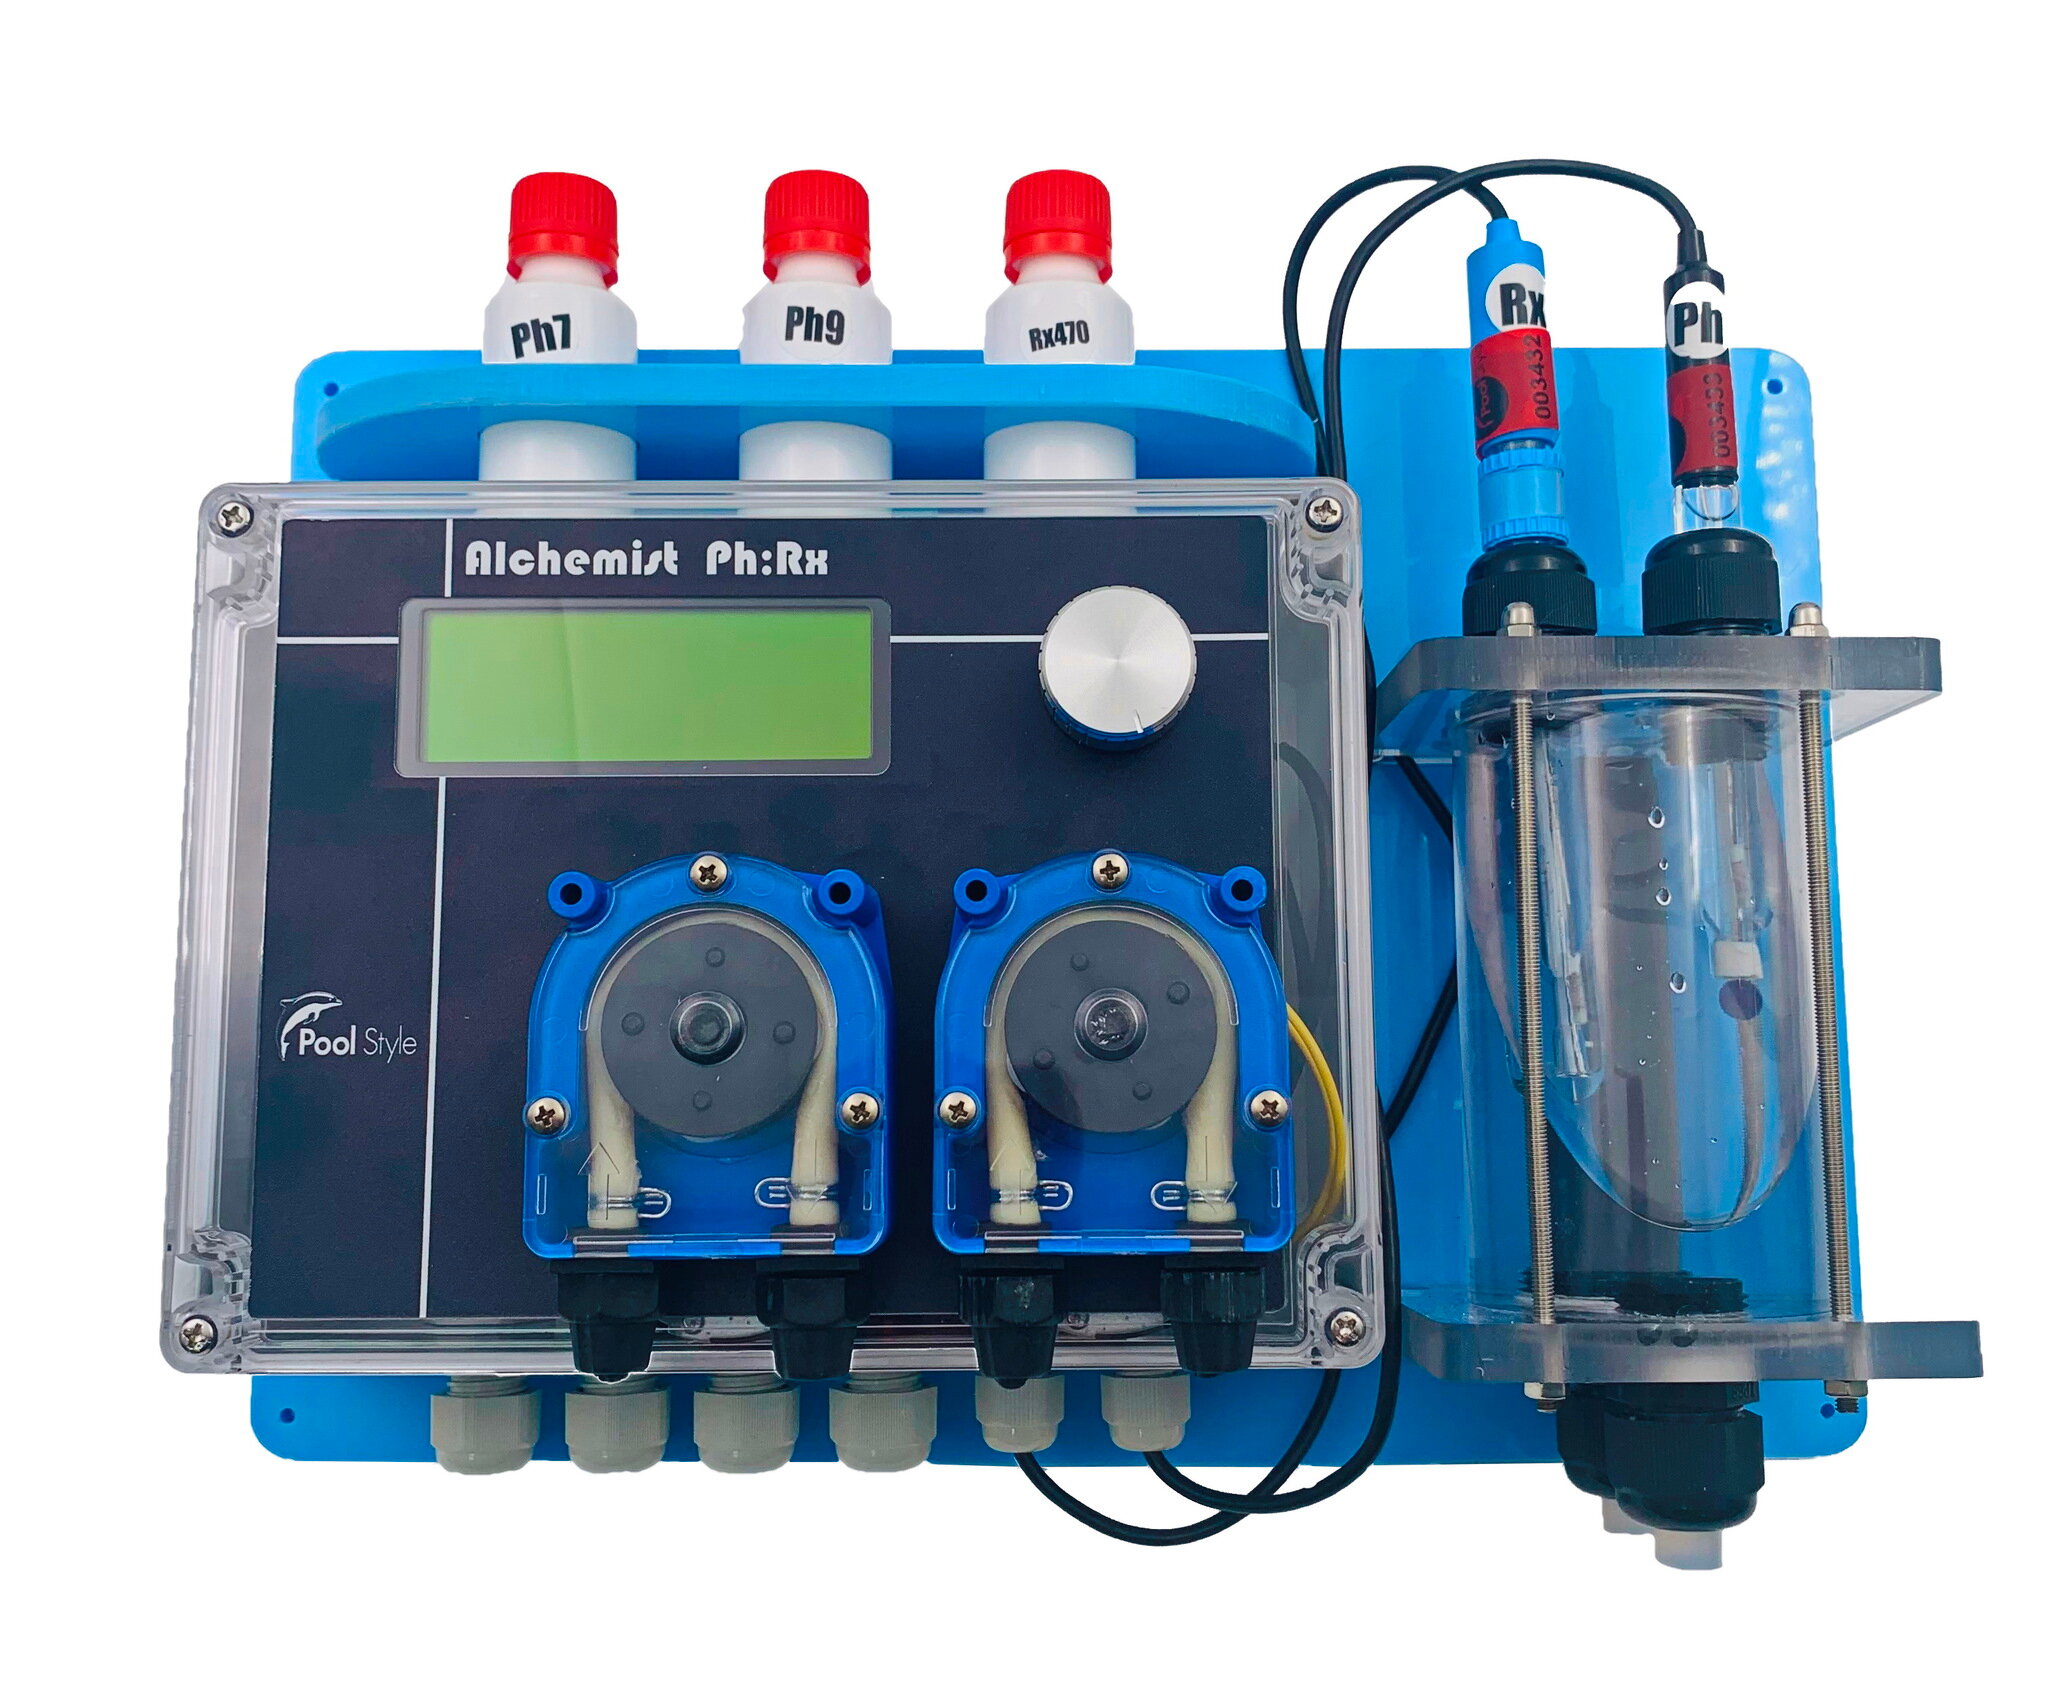 Станция дозации Pool Style Rx/ph Alchemist - Дозатор для бассейна - автоматическое измерение управление дозирования химических реагентов.